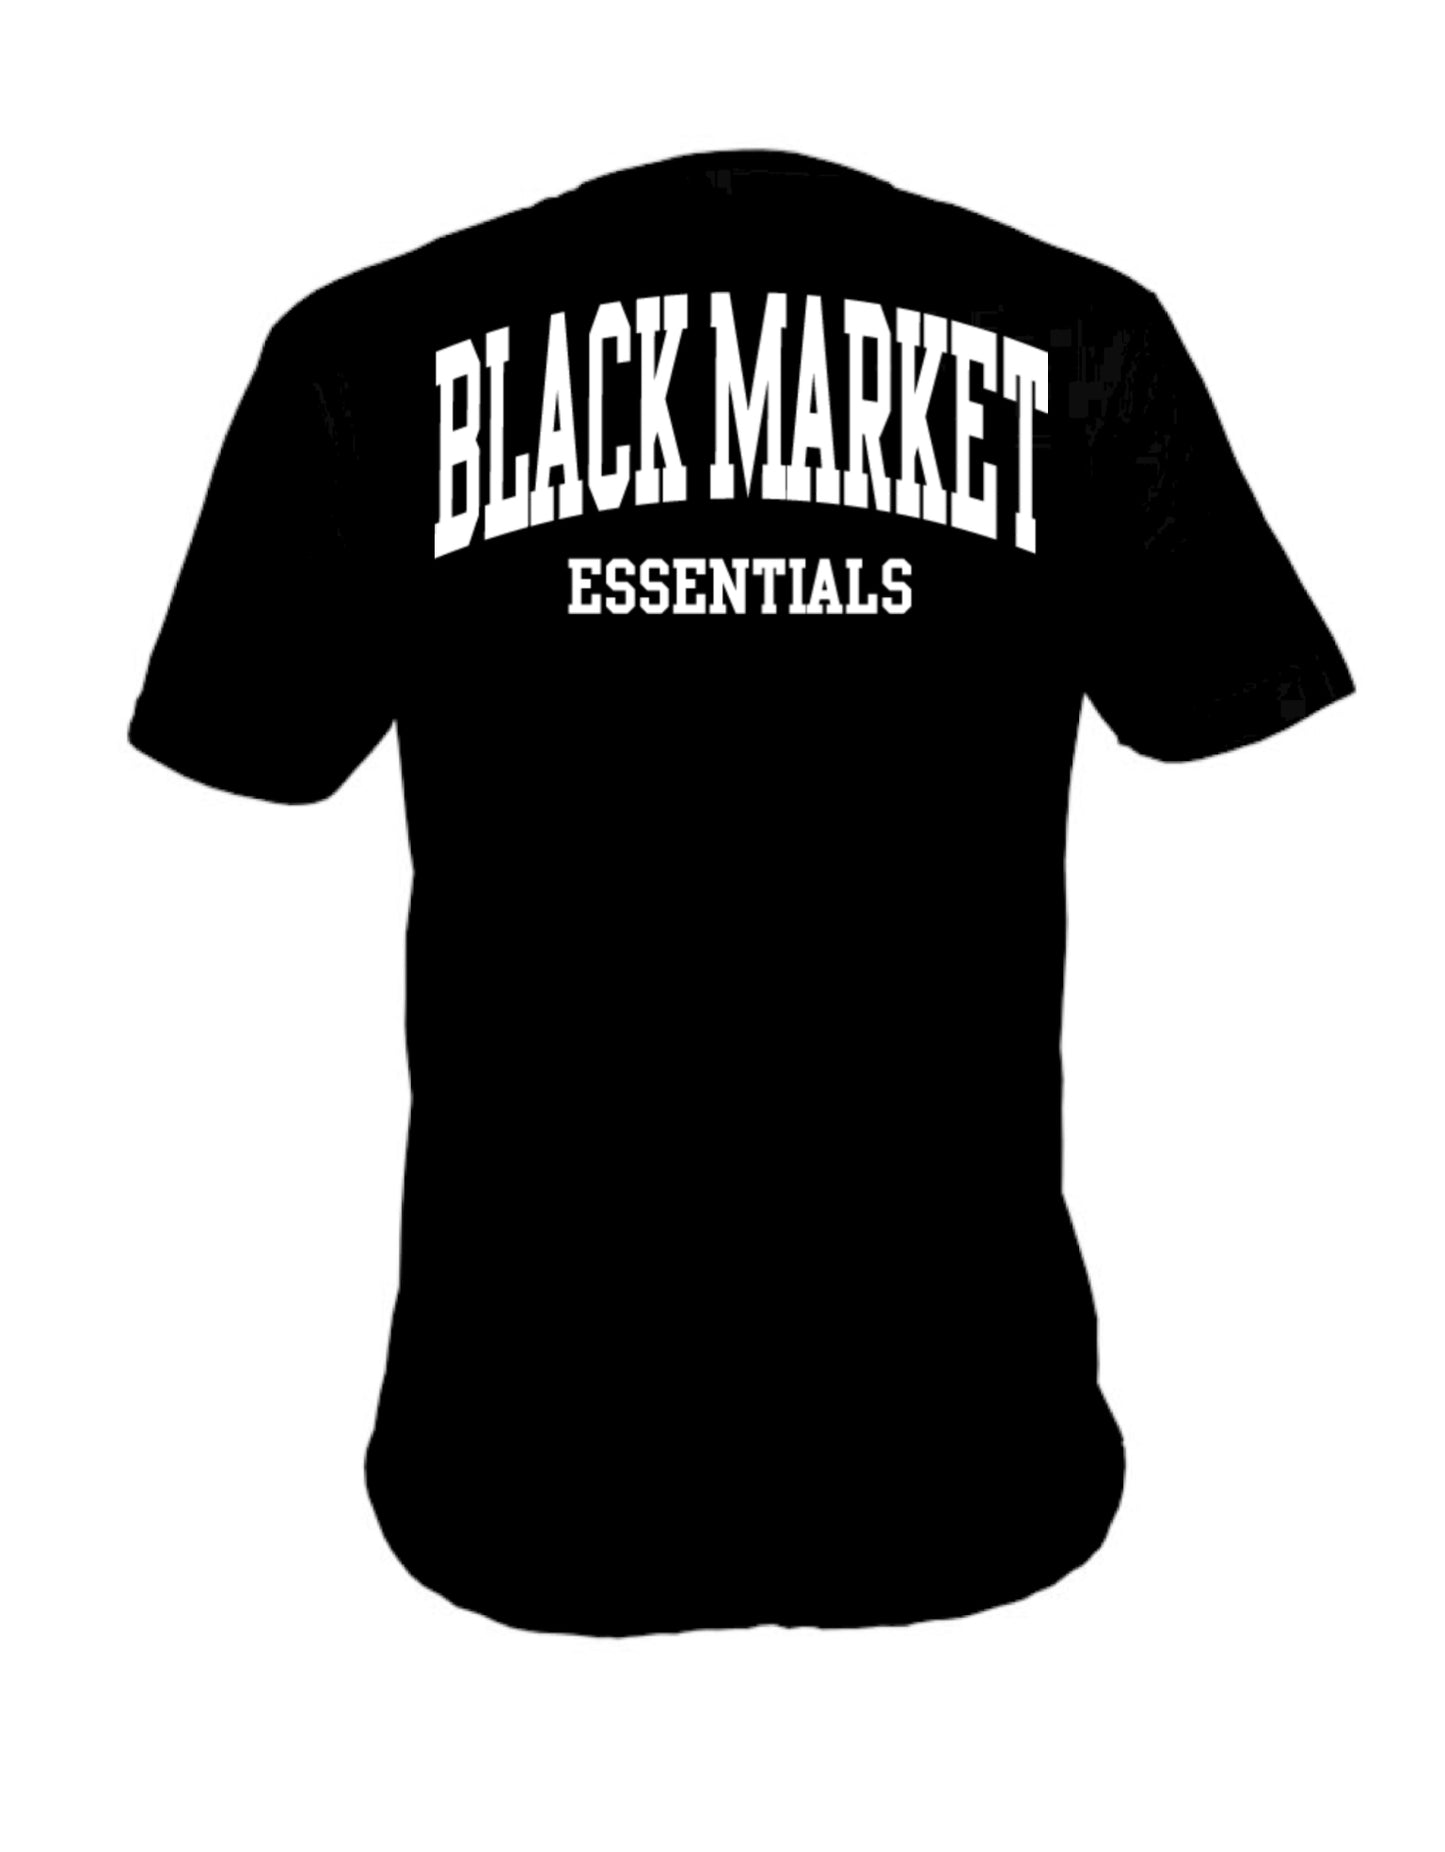 Black Market Essentials unisex t-shirt